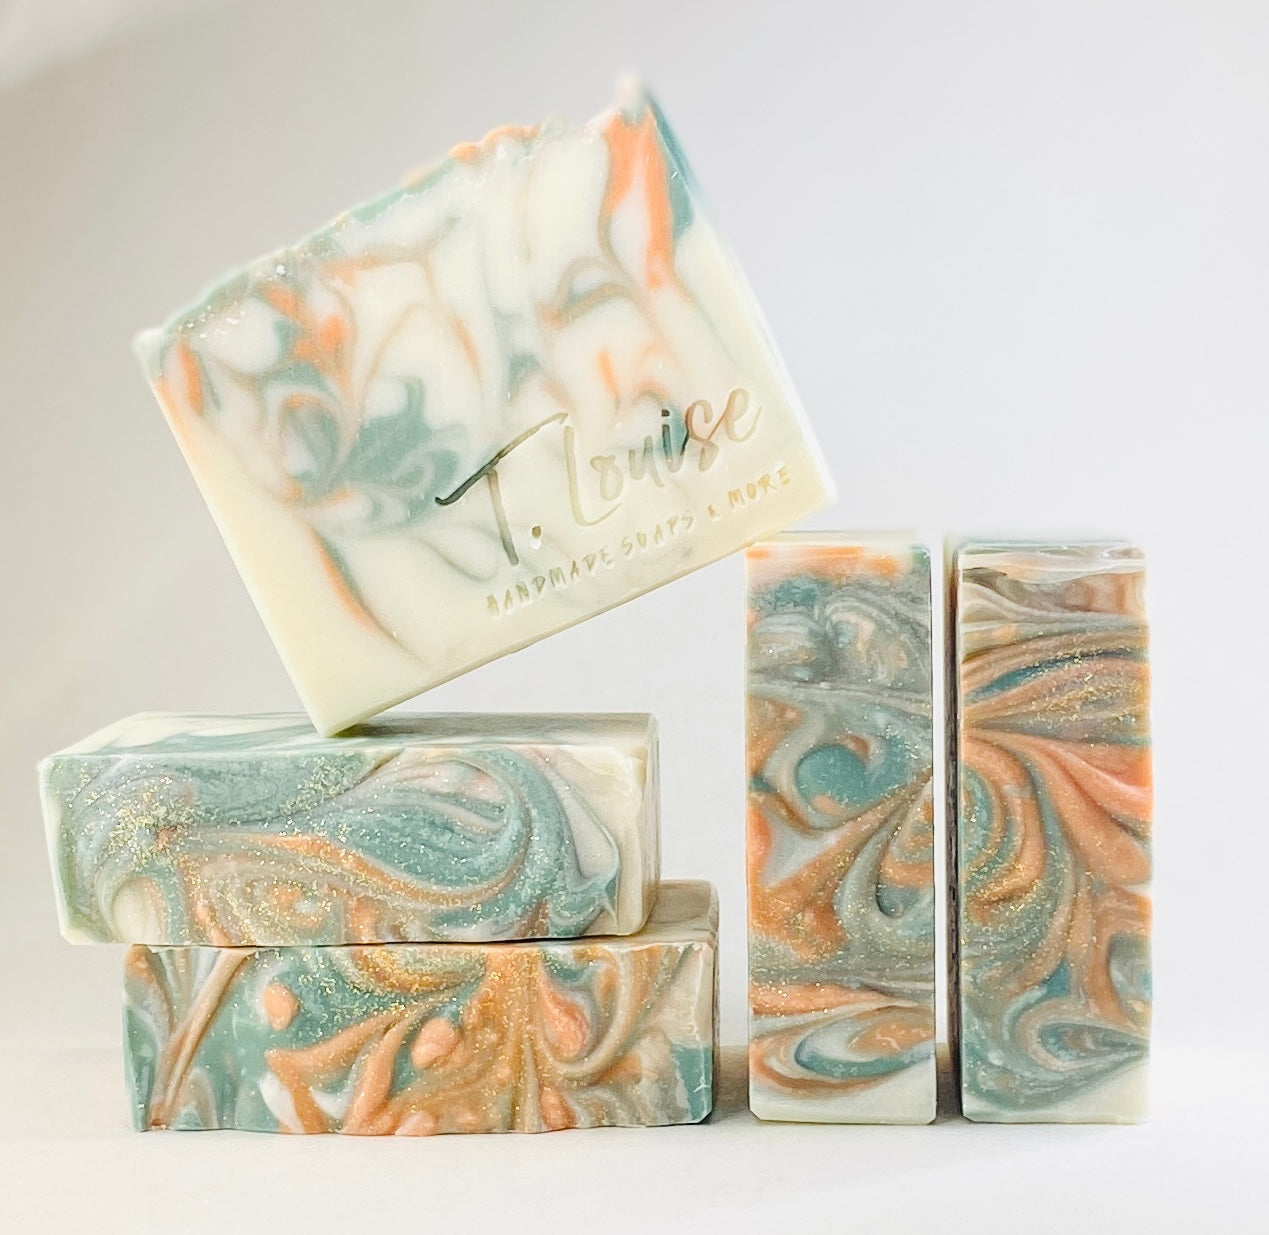 Woodlands handmade soap